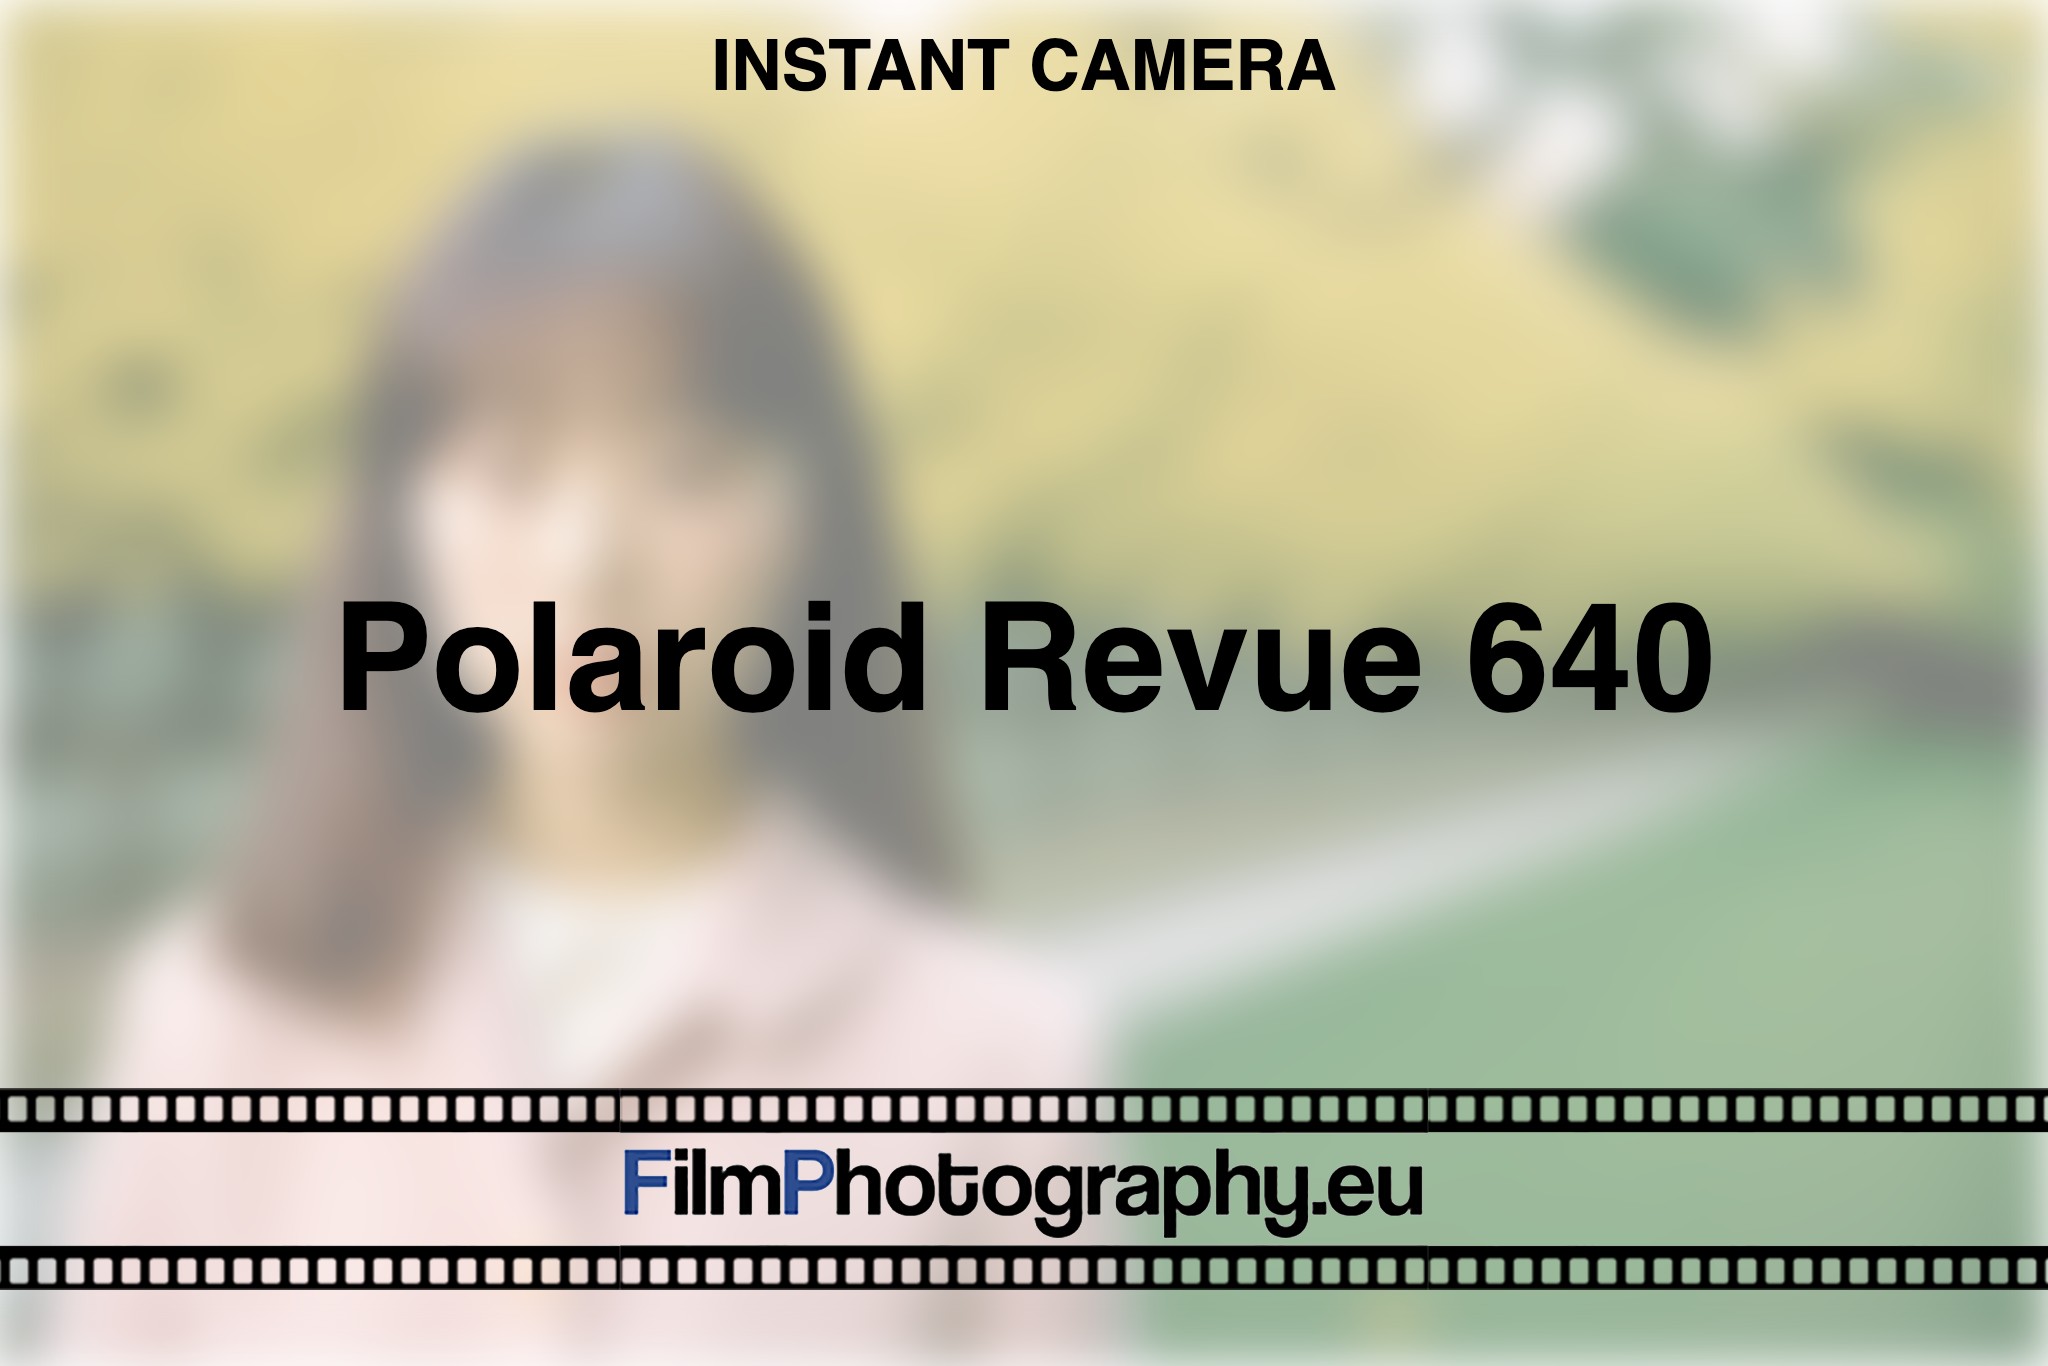 polaroid-revue-640-instant-camera-bnv